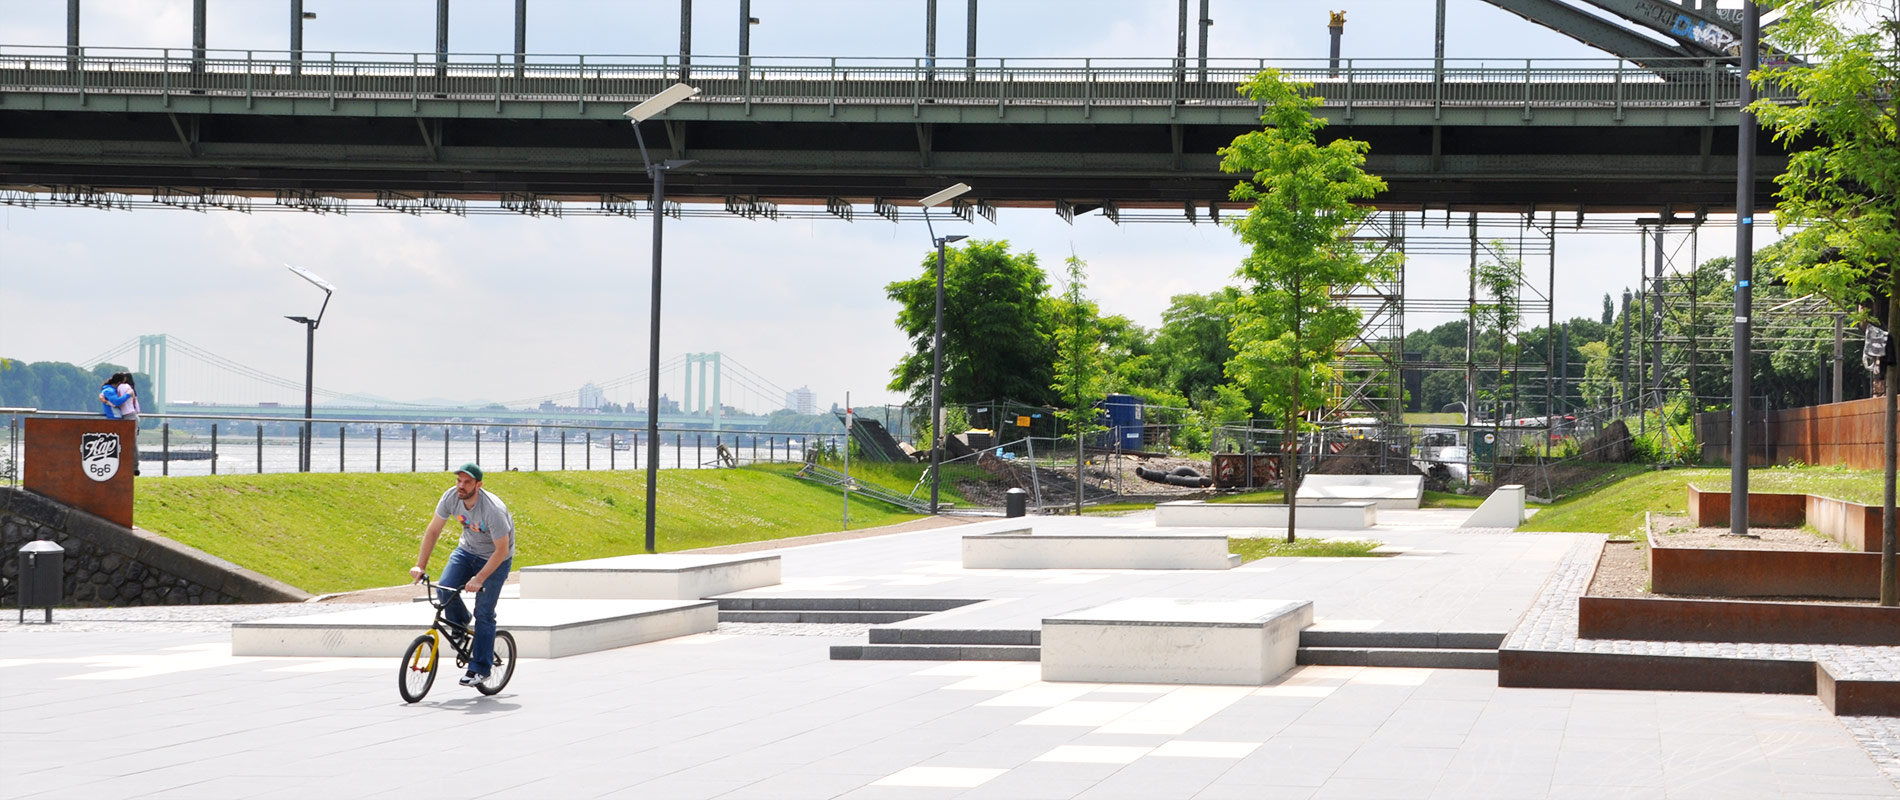 X-Move Skateanlagen Skateparks aus Ortbeton und Fertigteilen - Planung Umsetzung und Bau